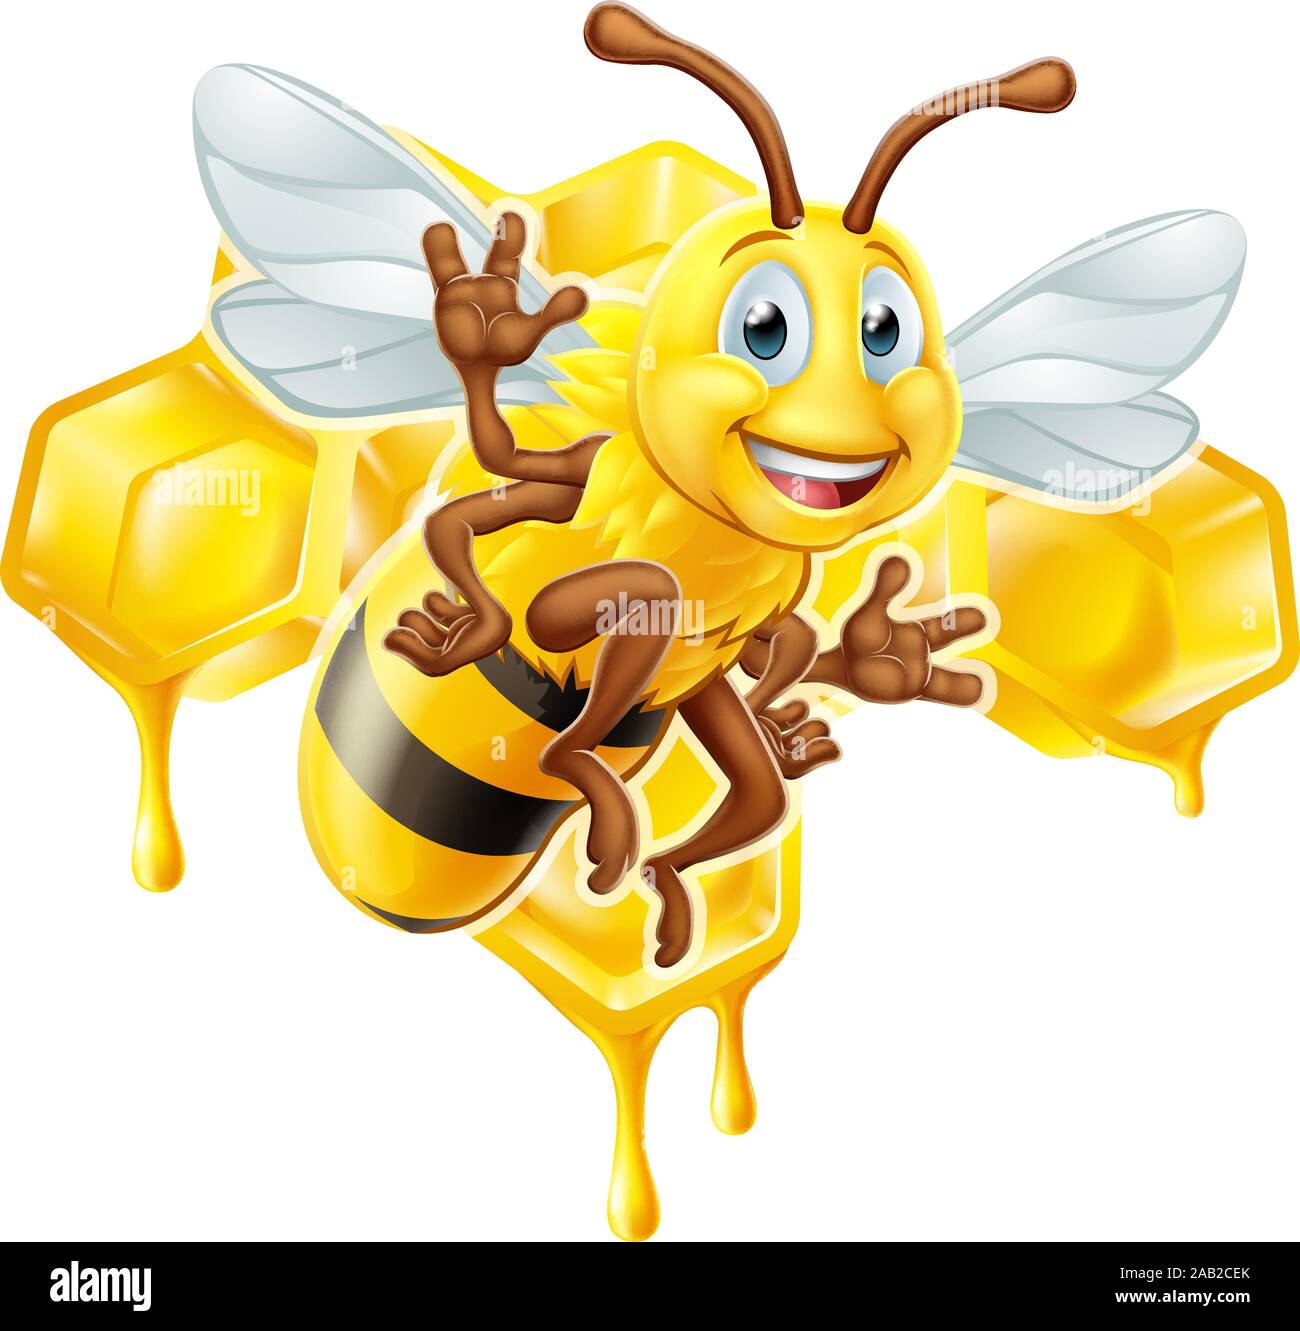 Nid d'abeille avec des caractères de dessin animé Illustration de Vecteur